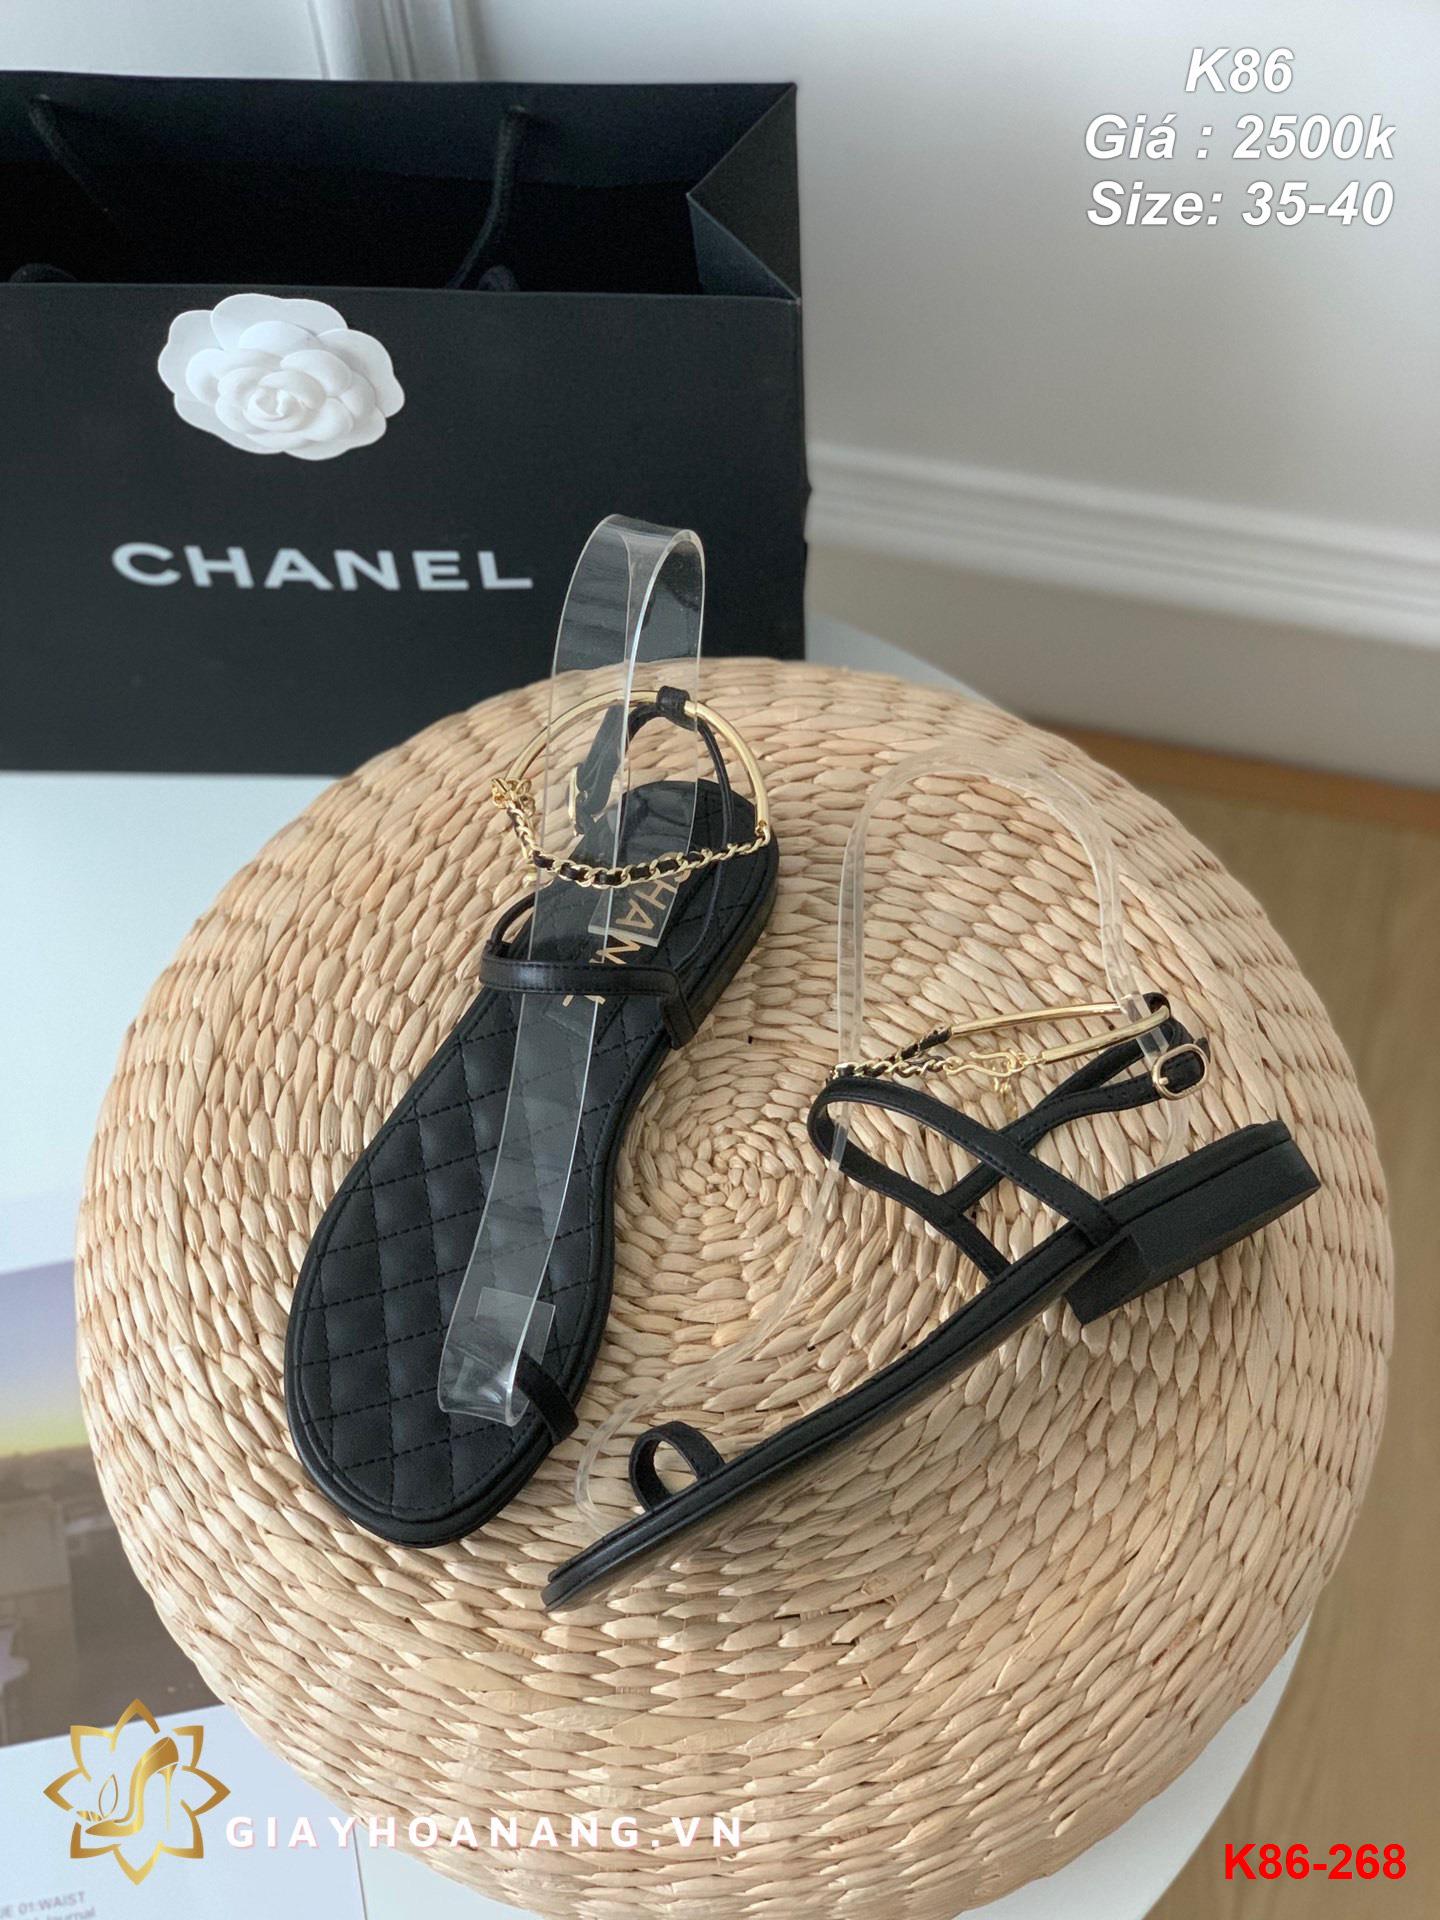 K86-268 Chanel sandal siêu cấp